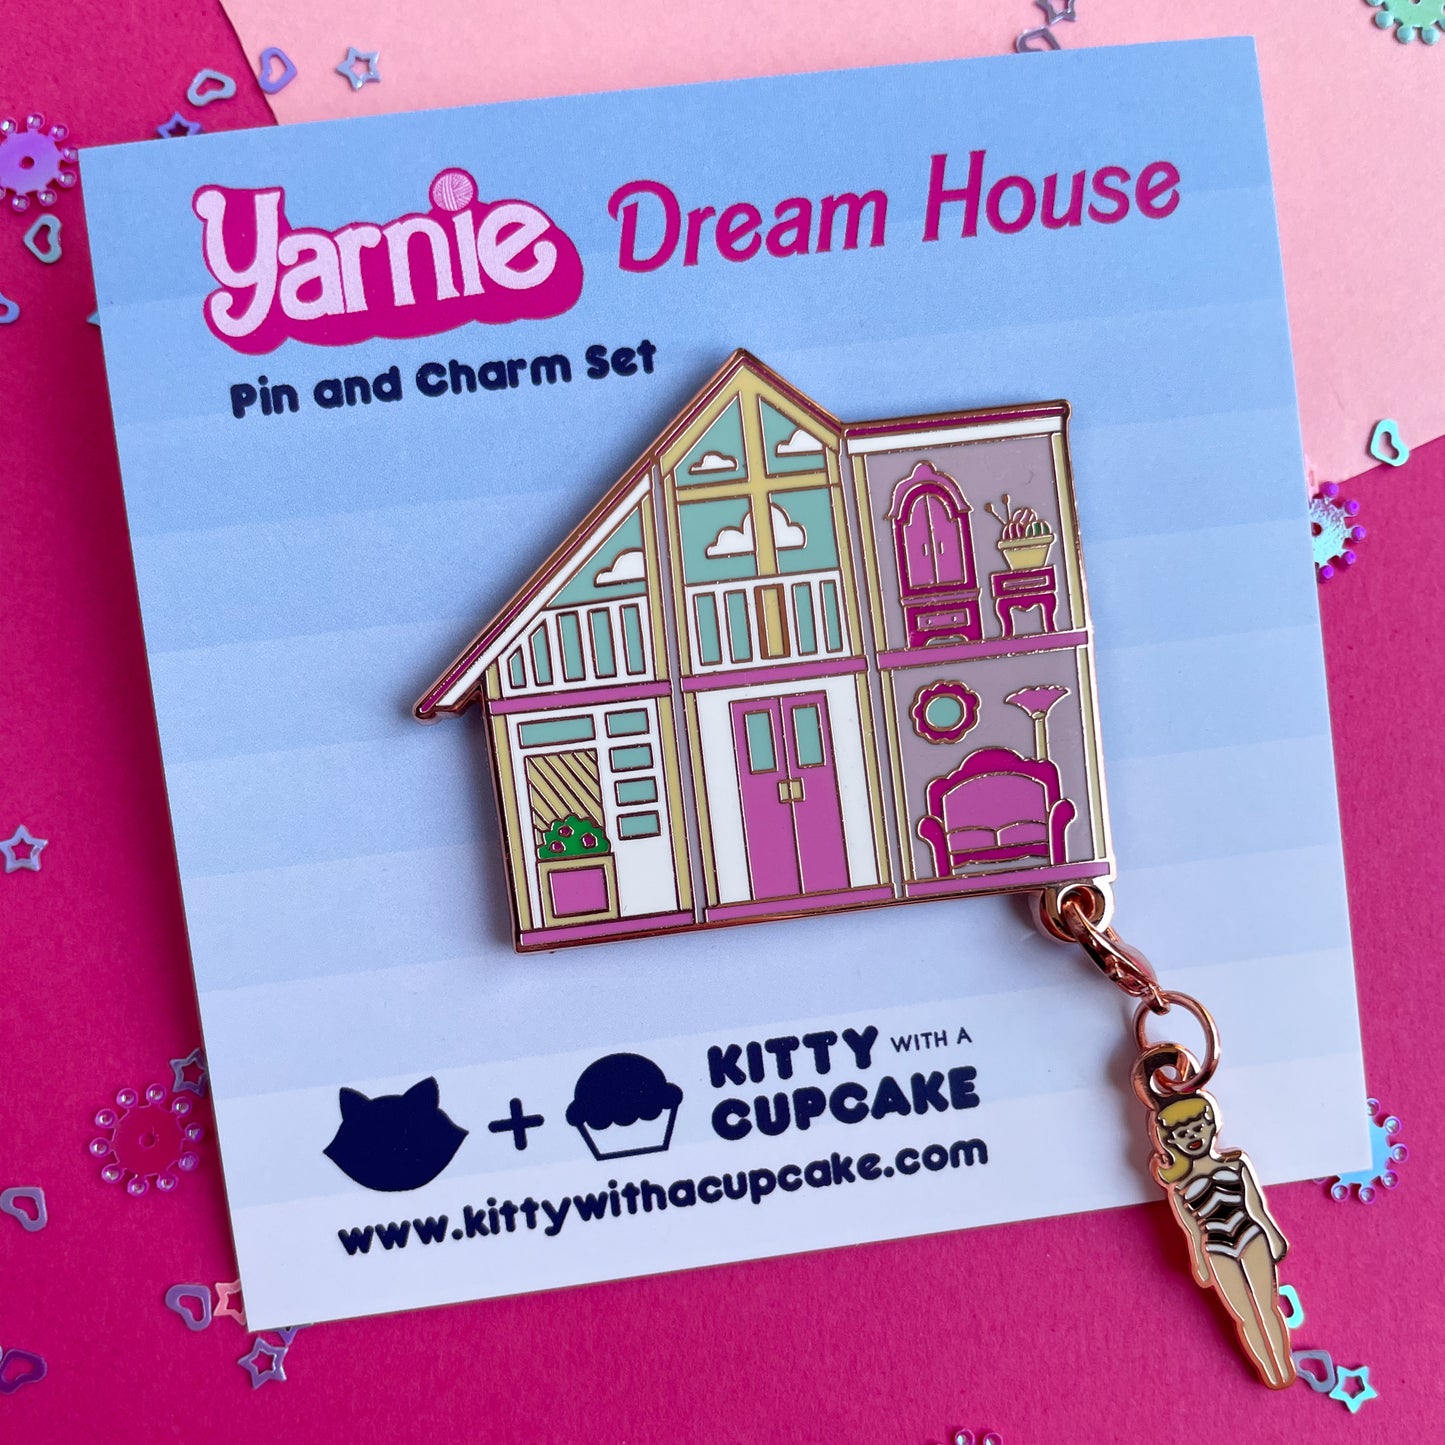 Yarnie's Dream House Enamel Pin Set - Includes "Original Yarnie" Charm